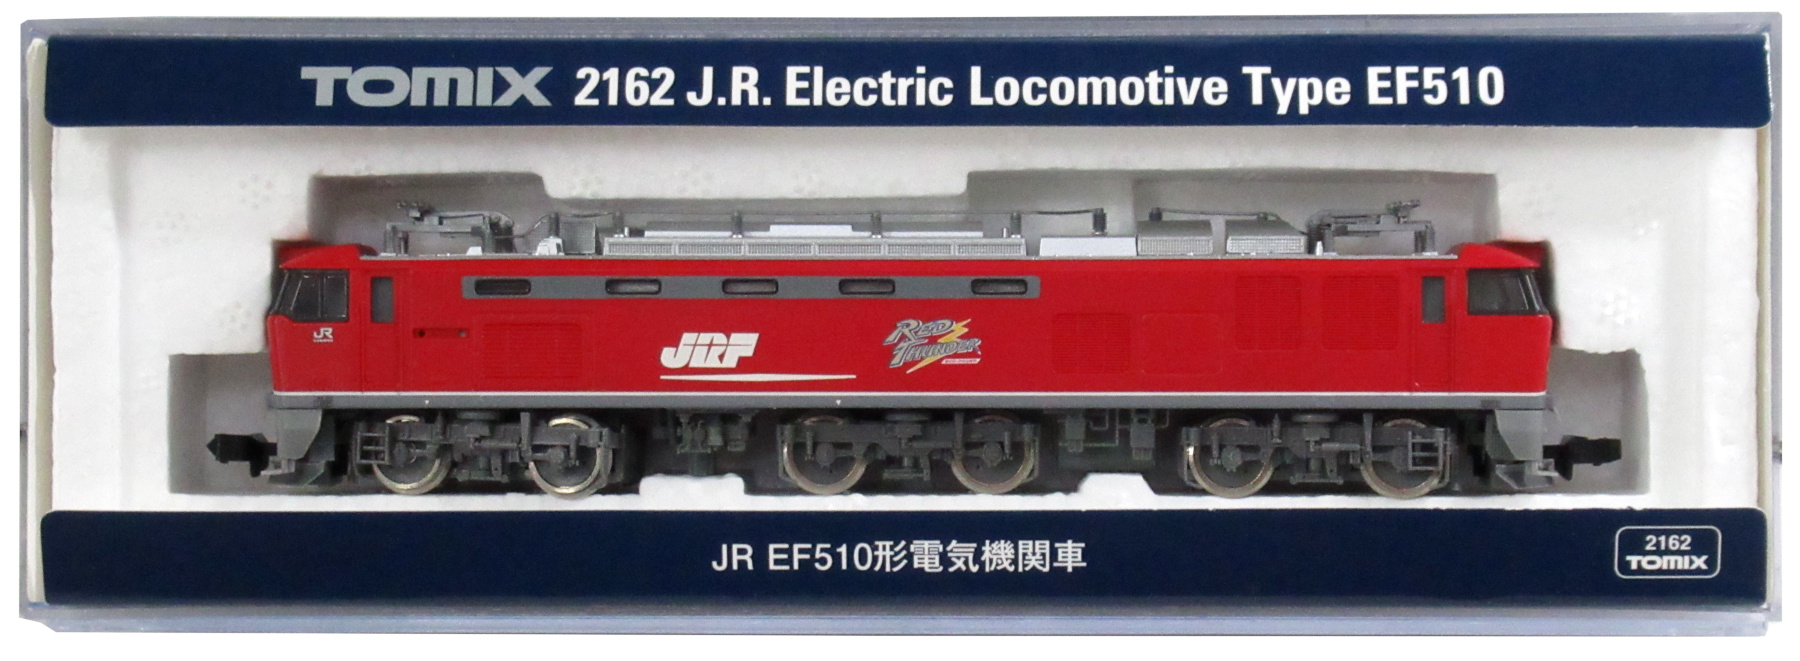 公式]鉄道模型(JR・国鉄 形式別(N)、電気機関車、EF510)カテゴリ 